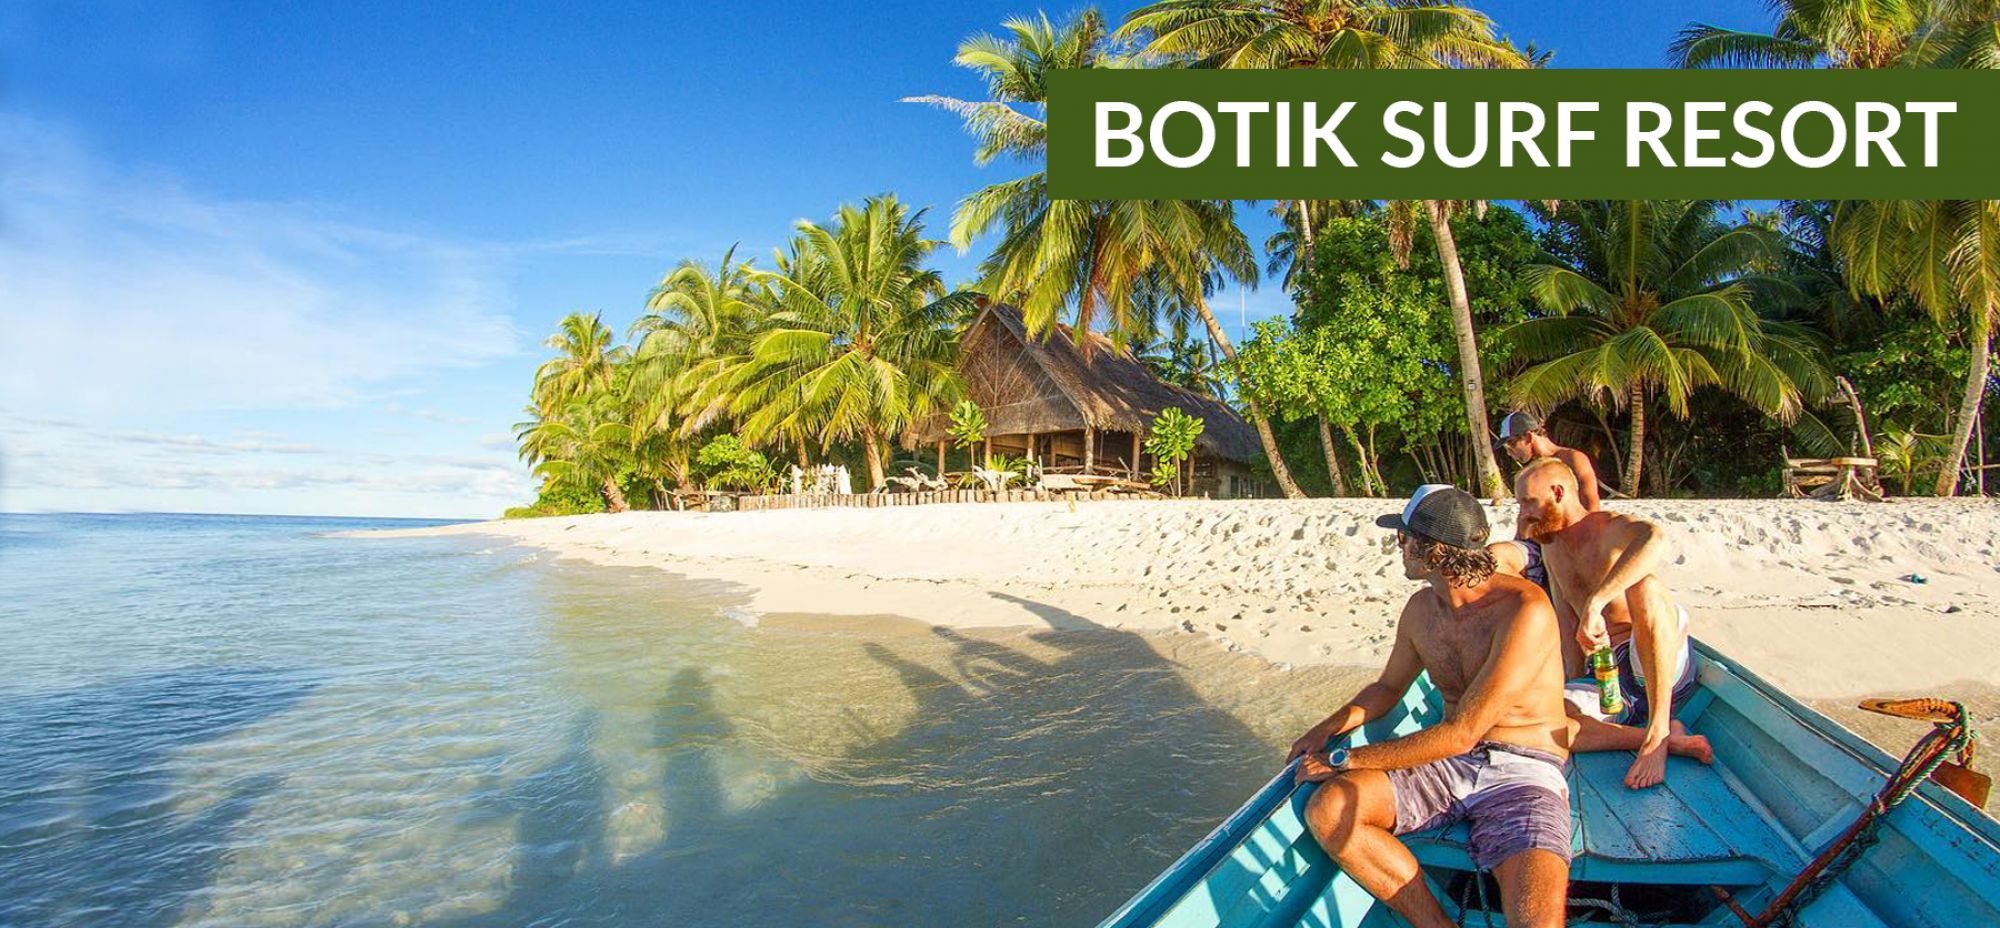 Botik Surf Resort